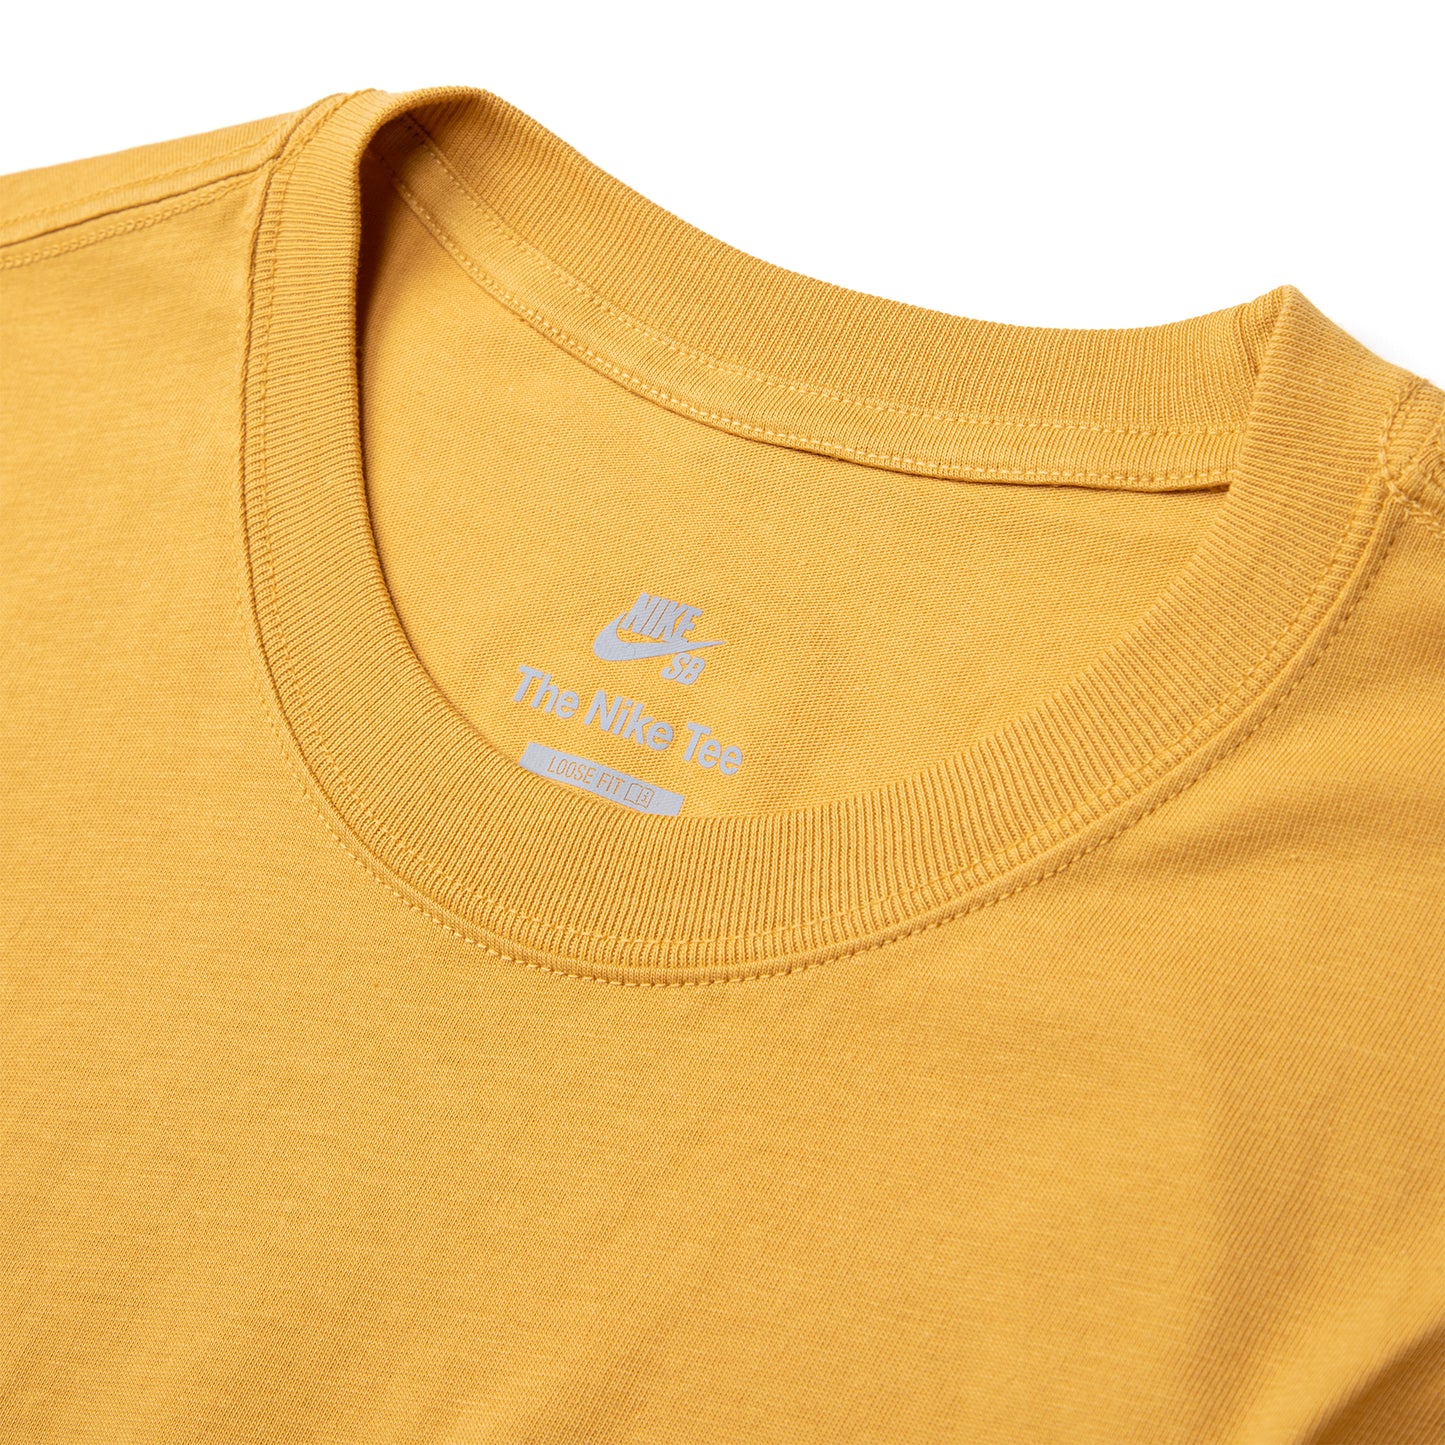 Nike SB Skate T-Shirt (Sanded Gold)